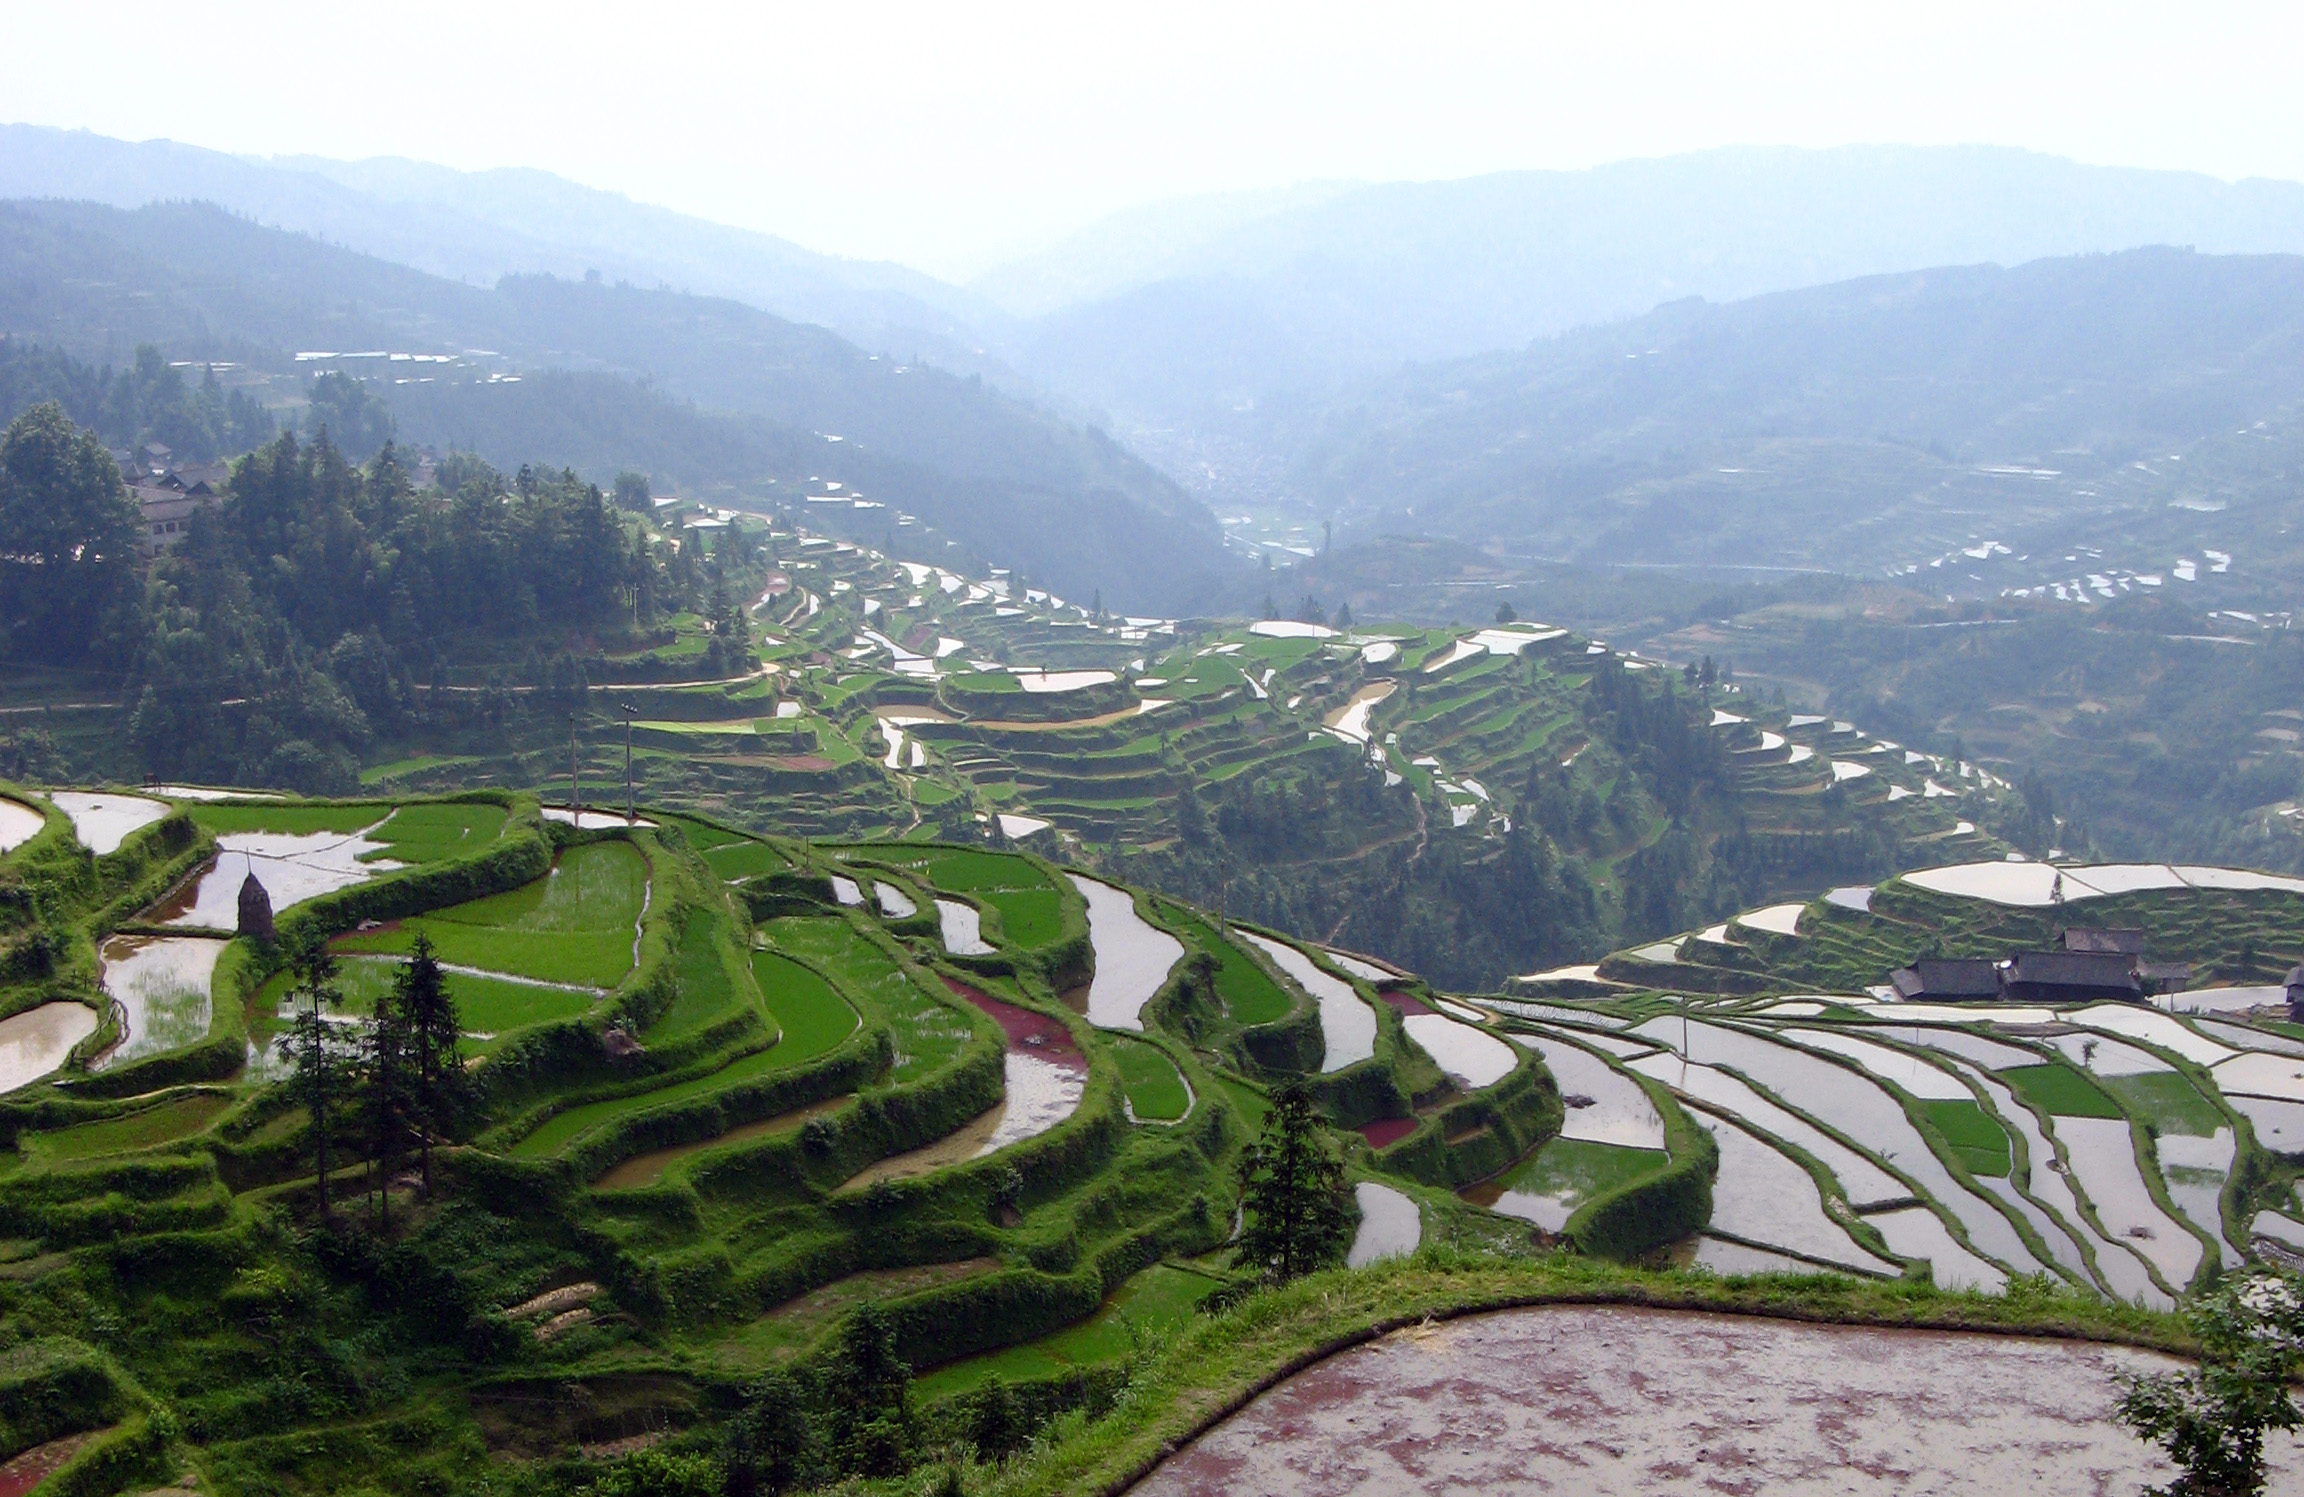 The rice terraces,Congjiang to Zhaoxing